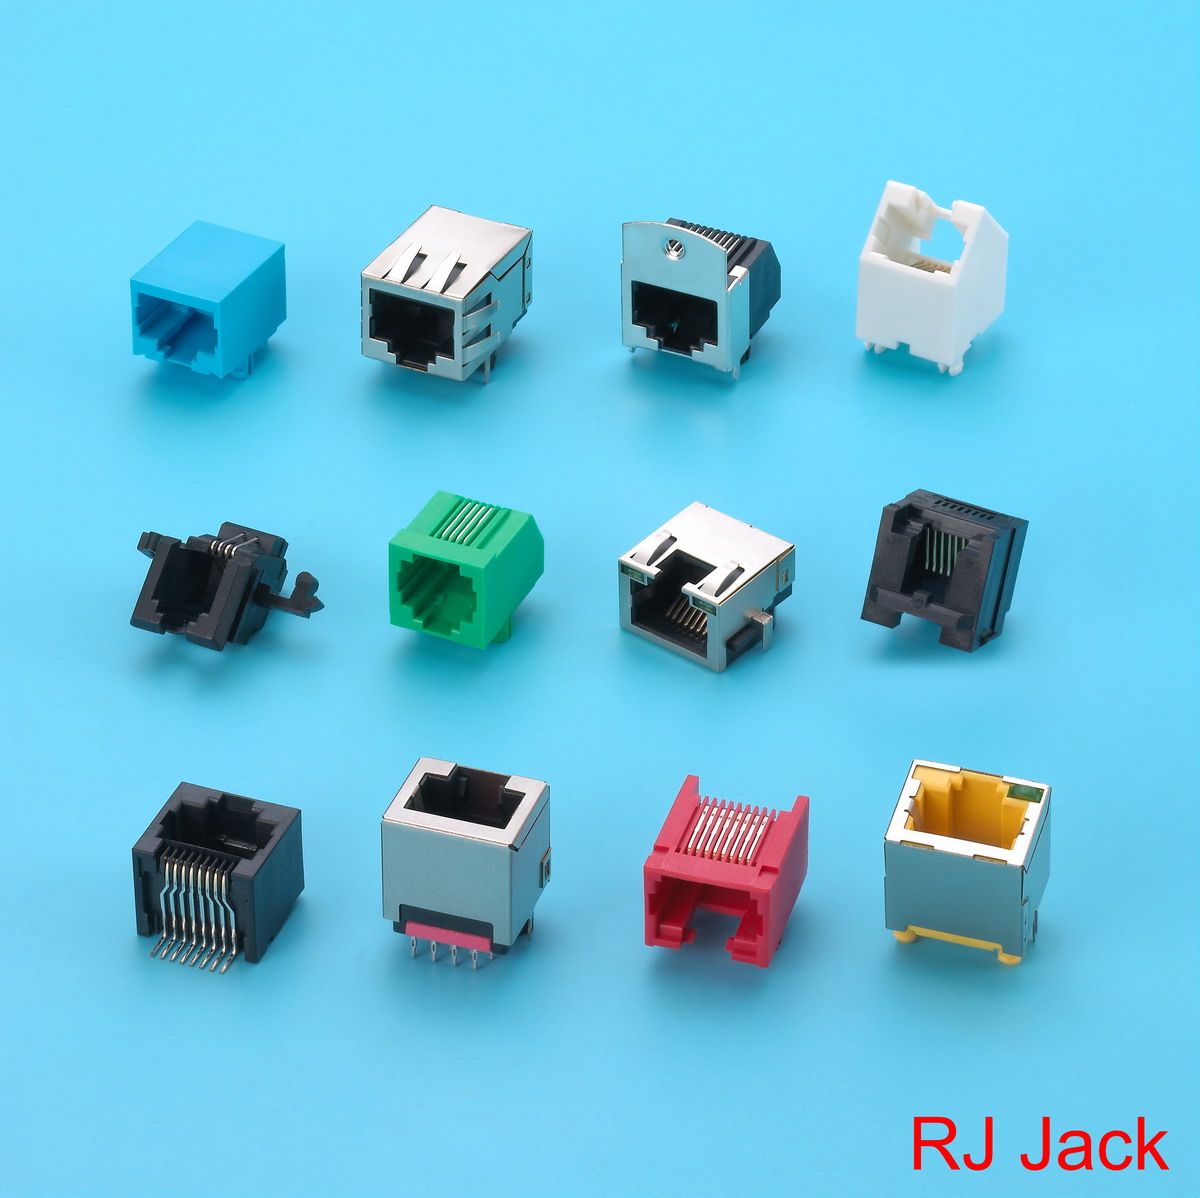 Kinsun provides multi-type RJ Jacks